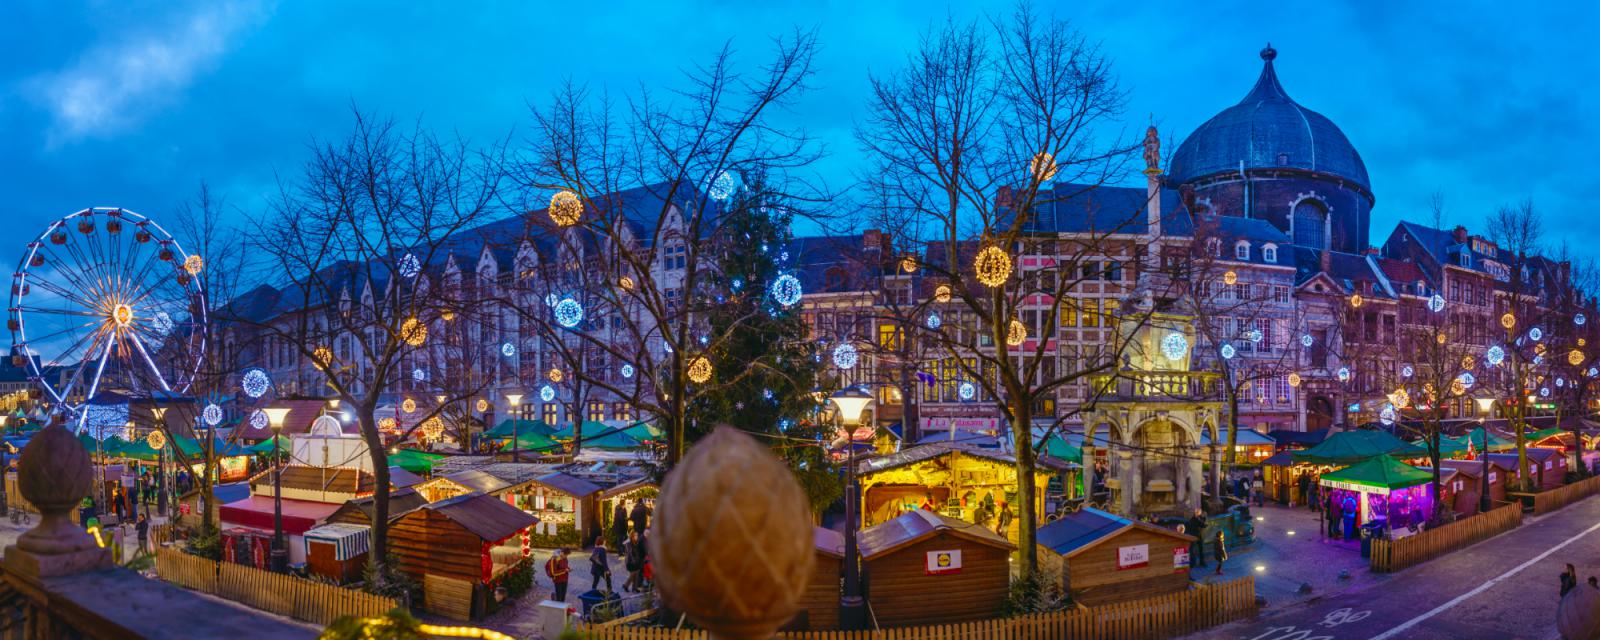 Kerstfans opgelet: Luik uitgeroepen tot kerststad van 2018 